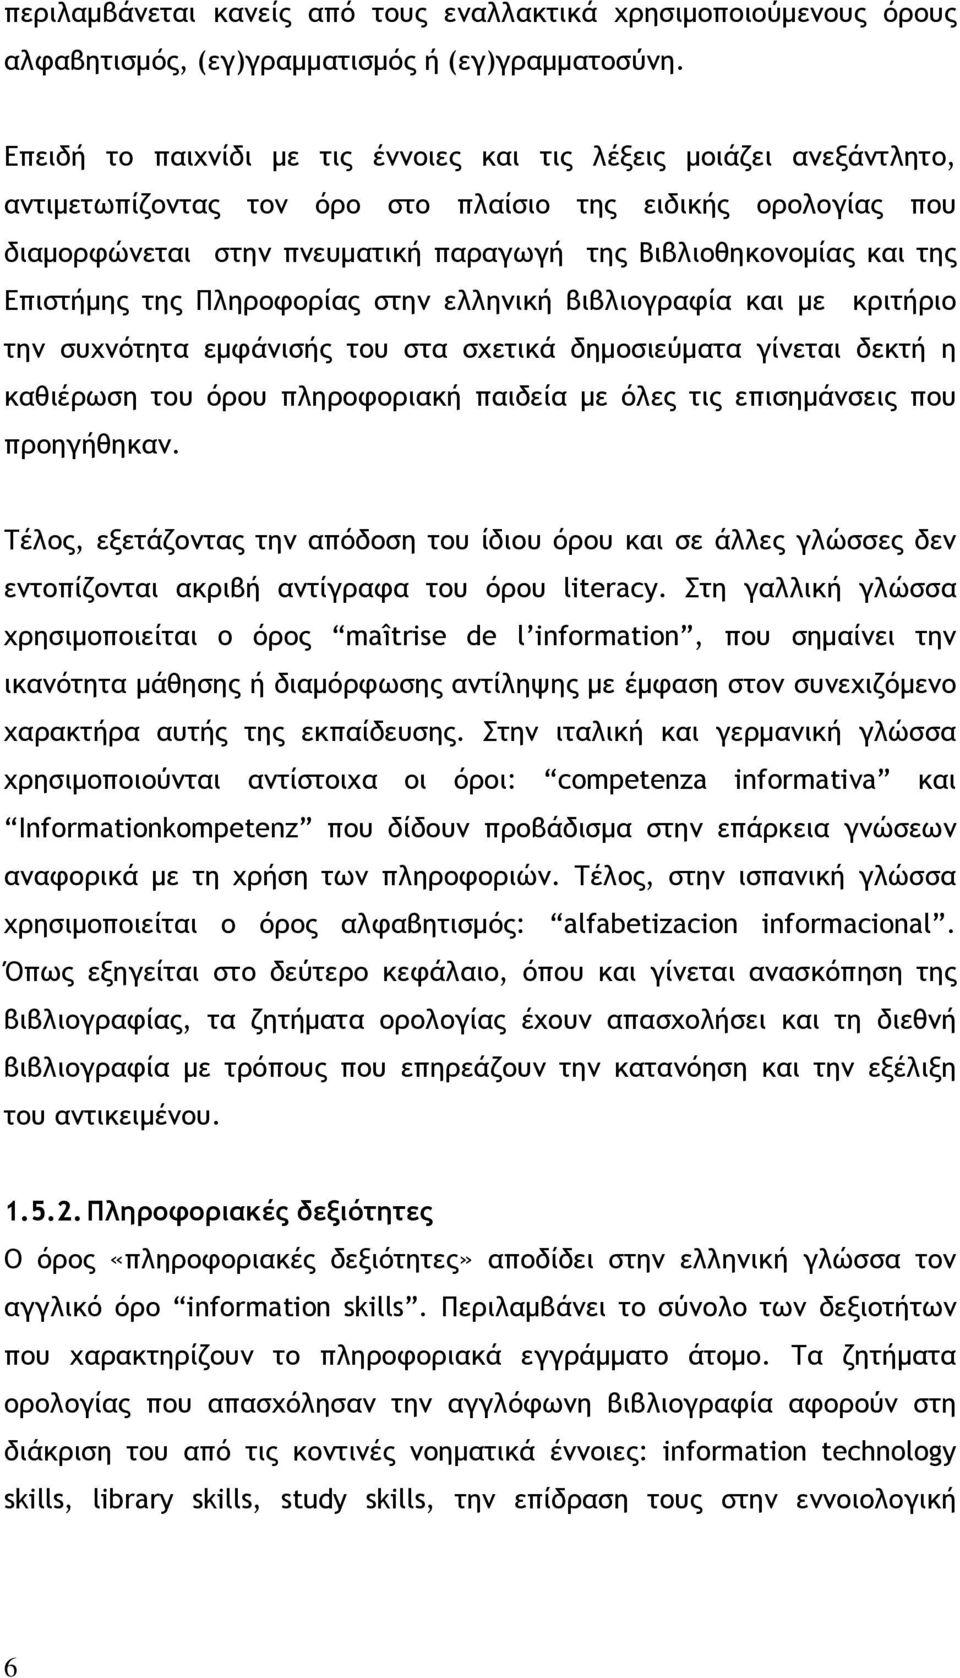 της Επιστήμης της Πληροφορίας στην ελληνική βιβλιογραφία και με κριτήριο την συχνότητα εμφάνισής του στα σχετικά δημοσιεύματα γίνεται δεκτή η καθιέρωση του όρου πληροφοριακή παιδεία με όλες τις